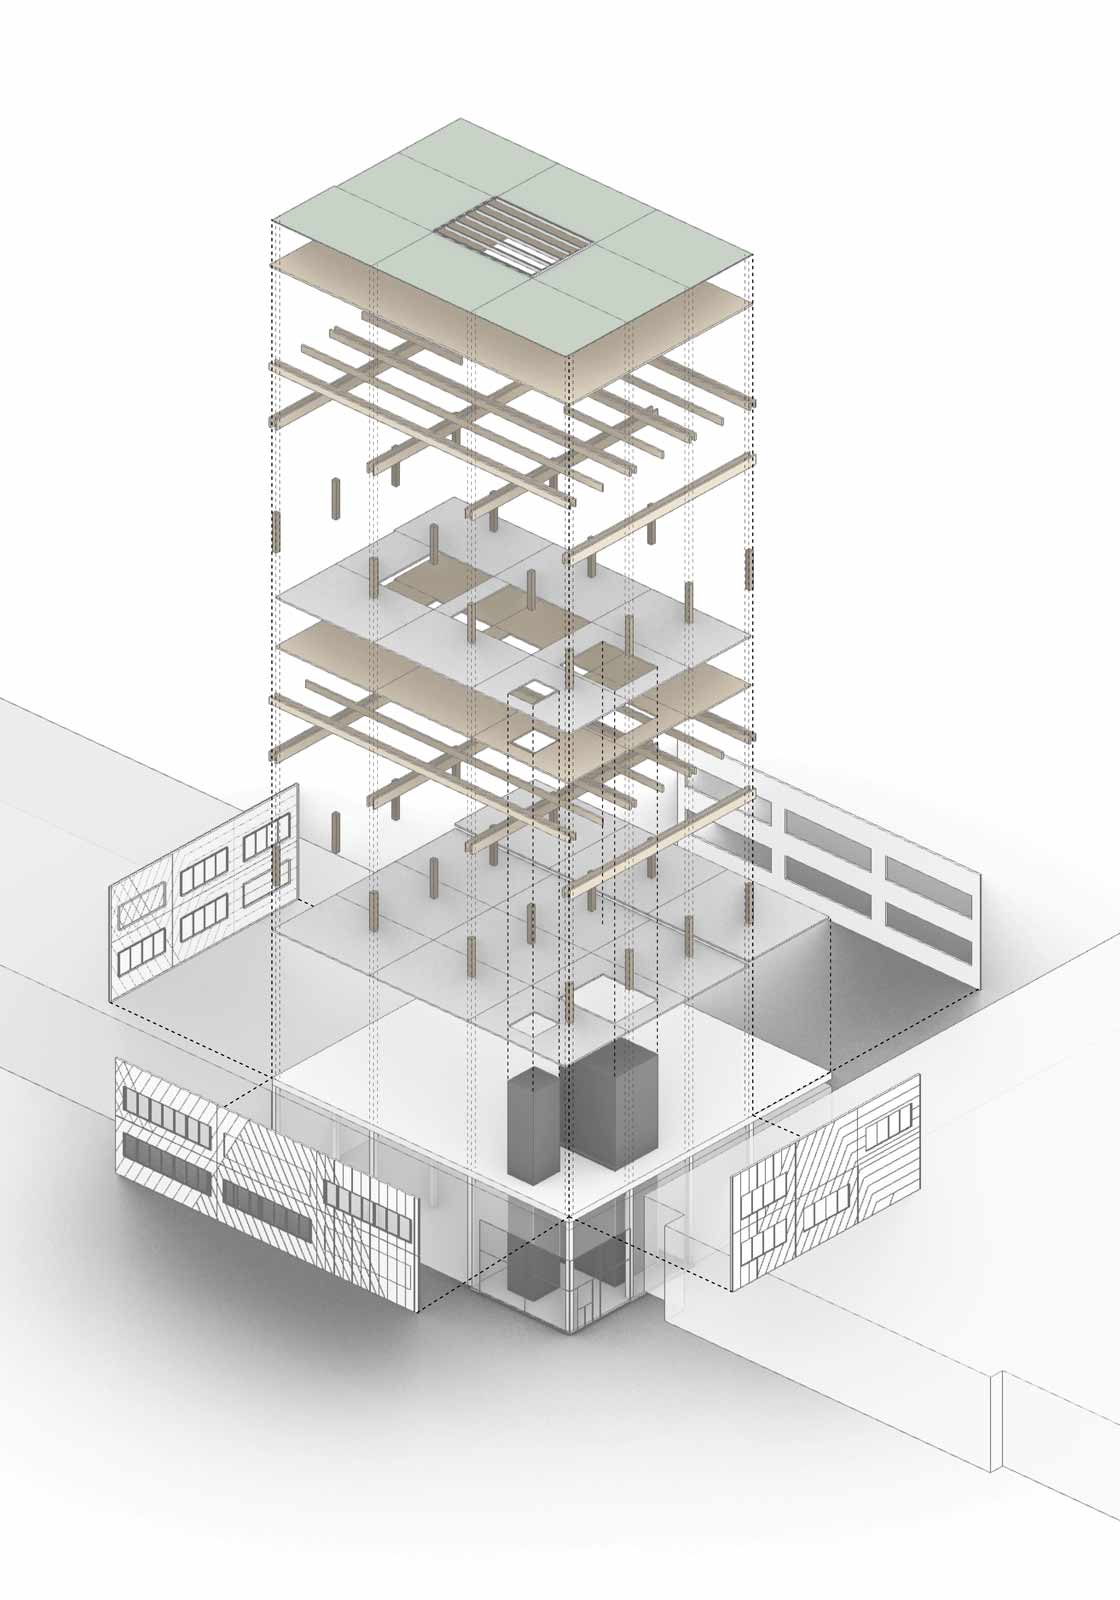 Projektiranje poslovne zgrade kao drvene konstrukcije. Piktogram: ATP